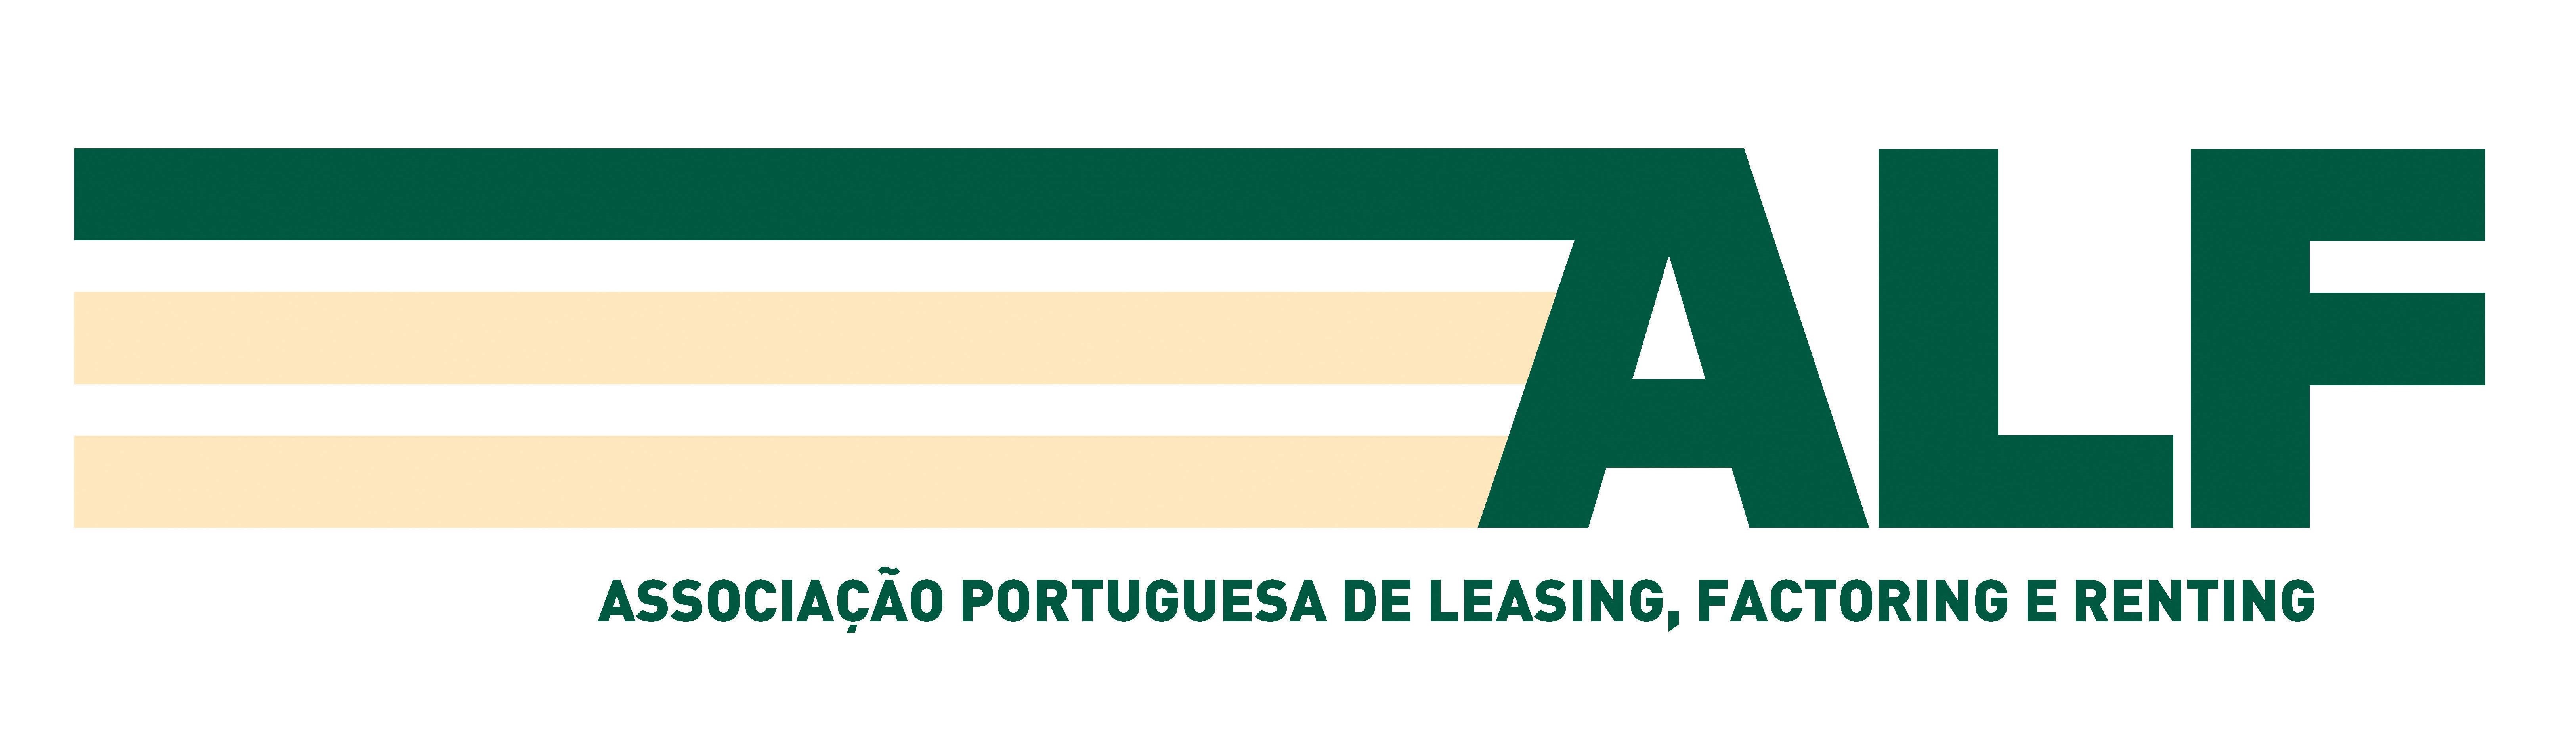 Logo ALF